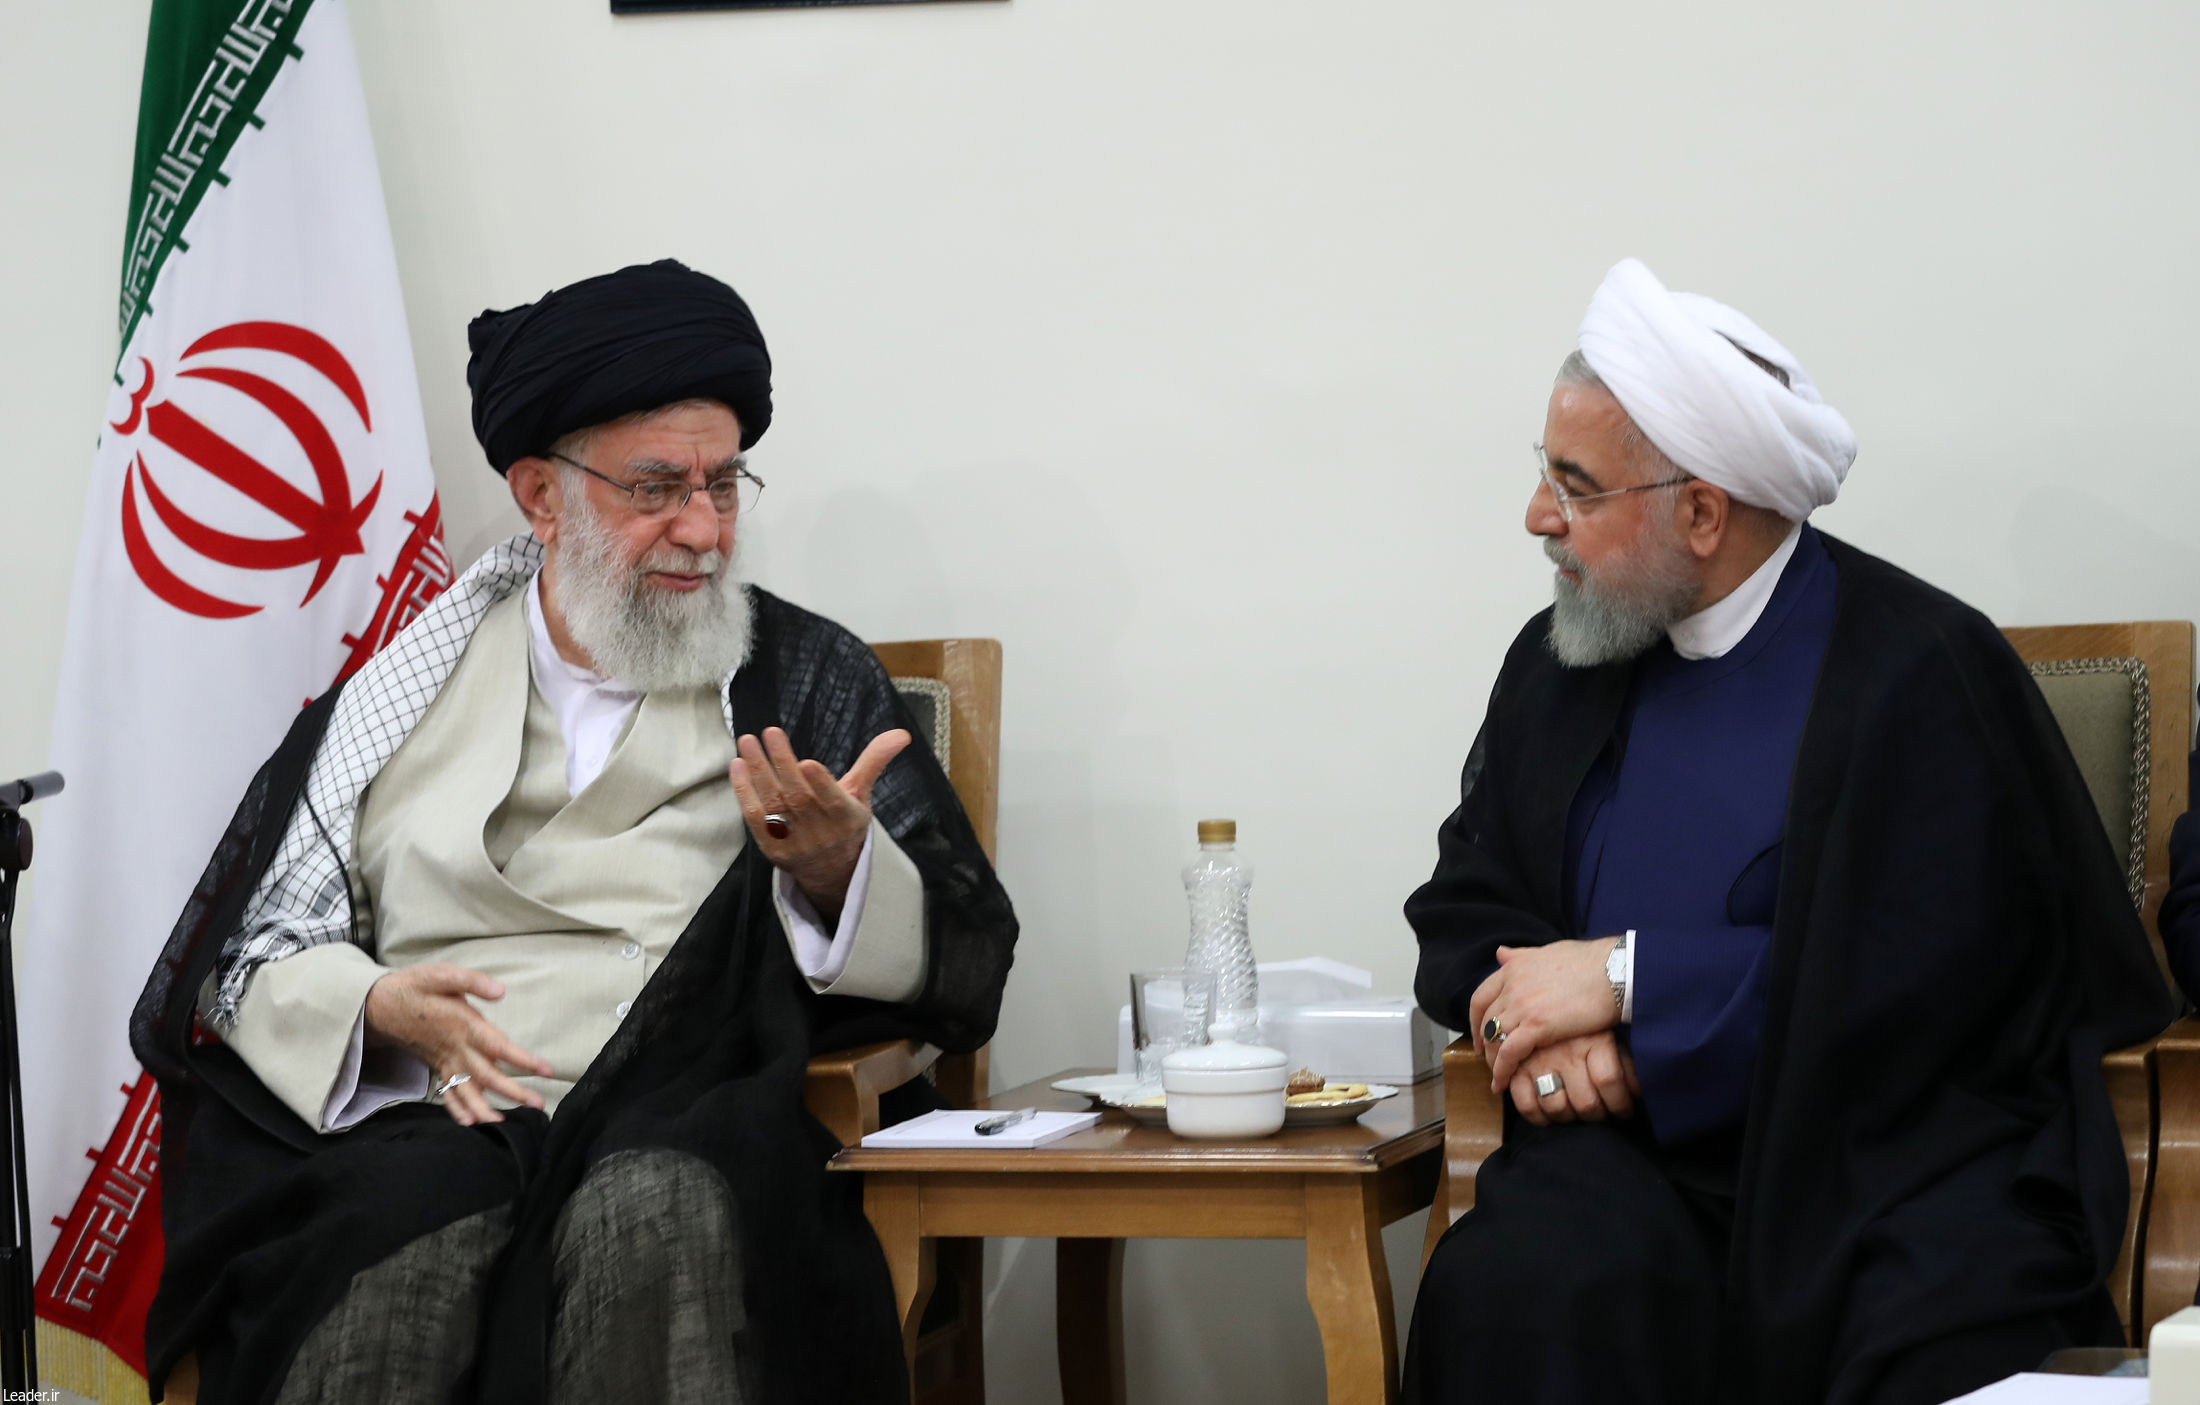 کم اطلاعی برخی حزب اللهی ها نسبت به رهبری/چرا روحانی را برکنار نمی کند؟